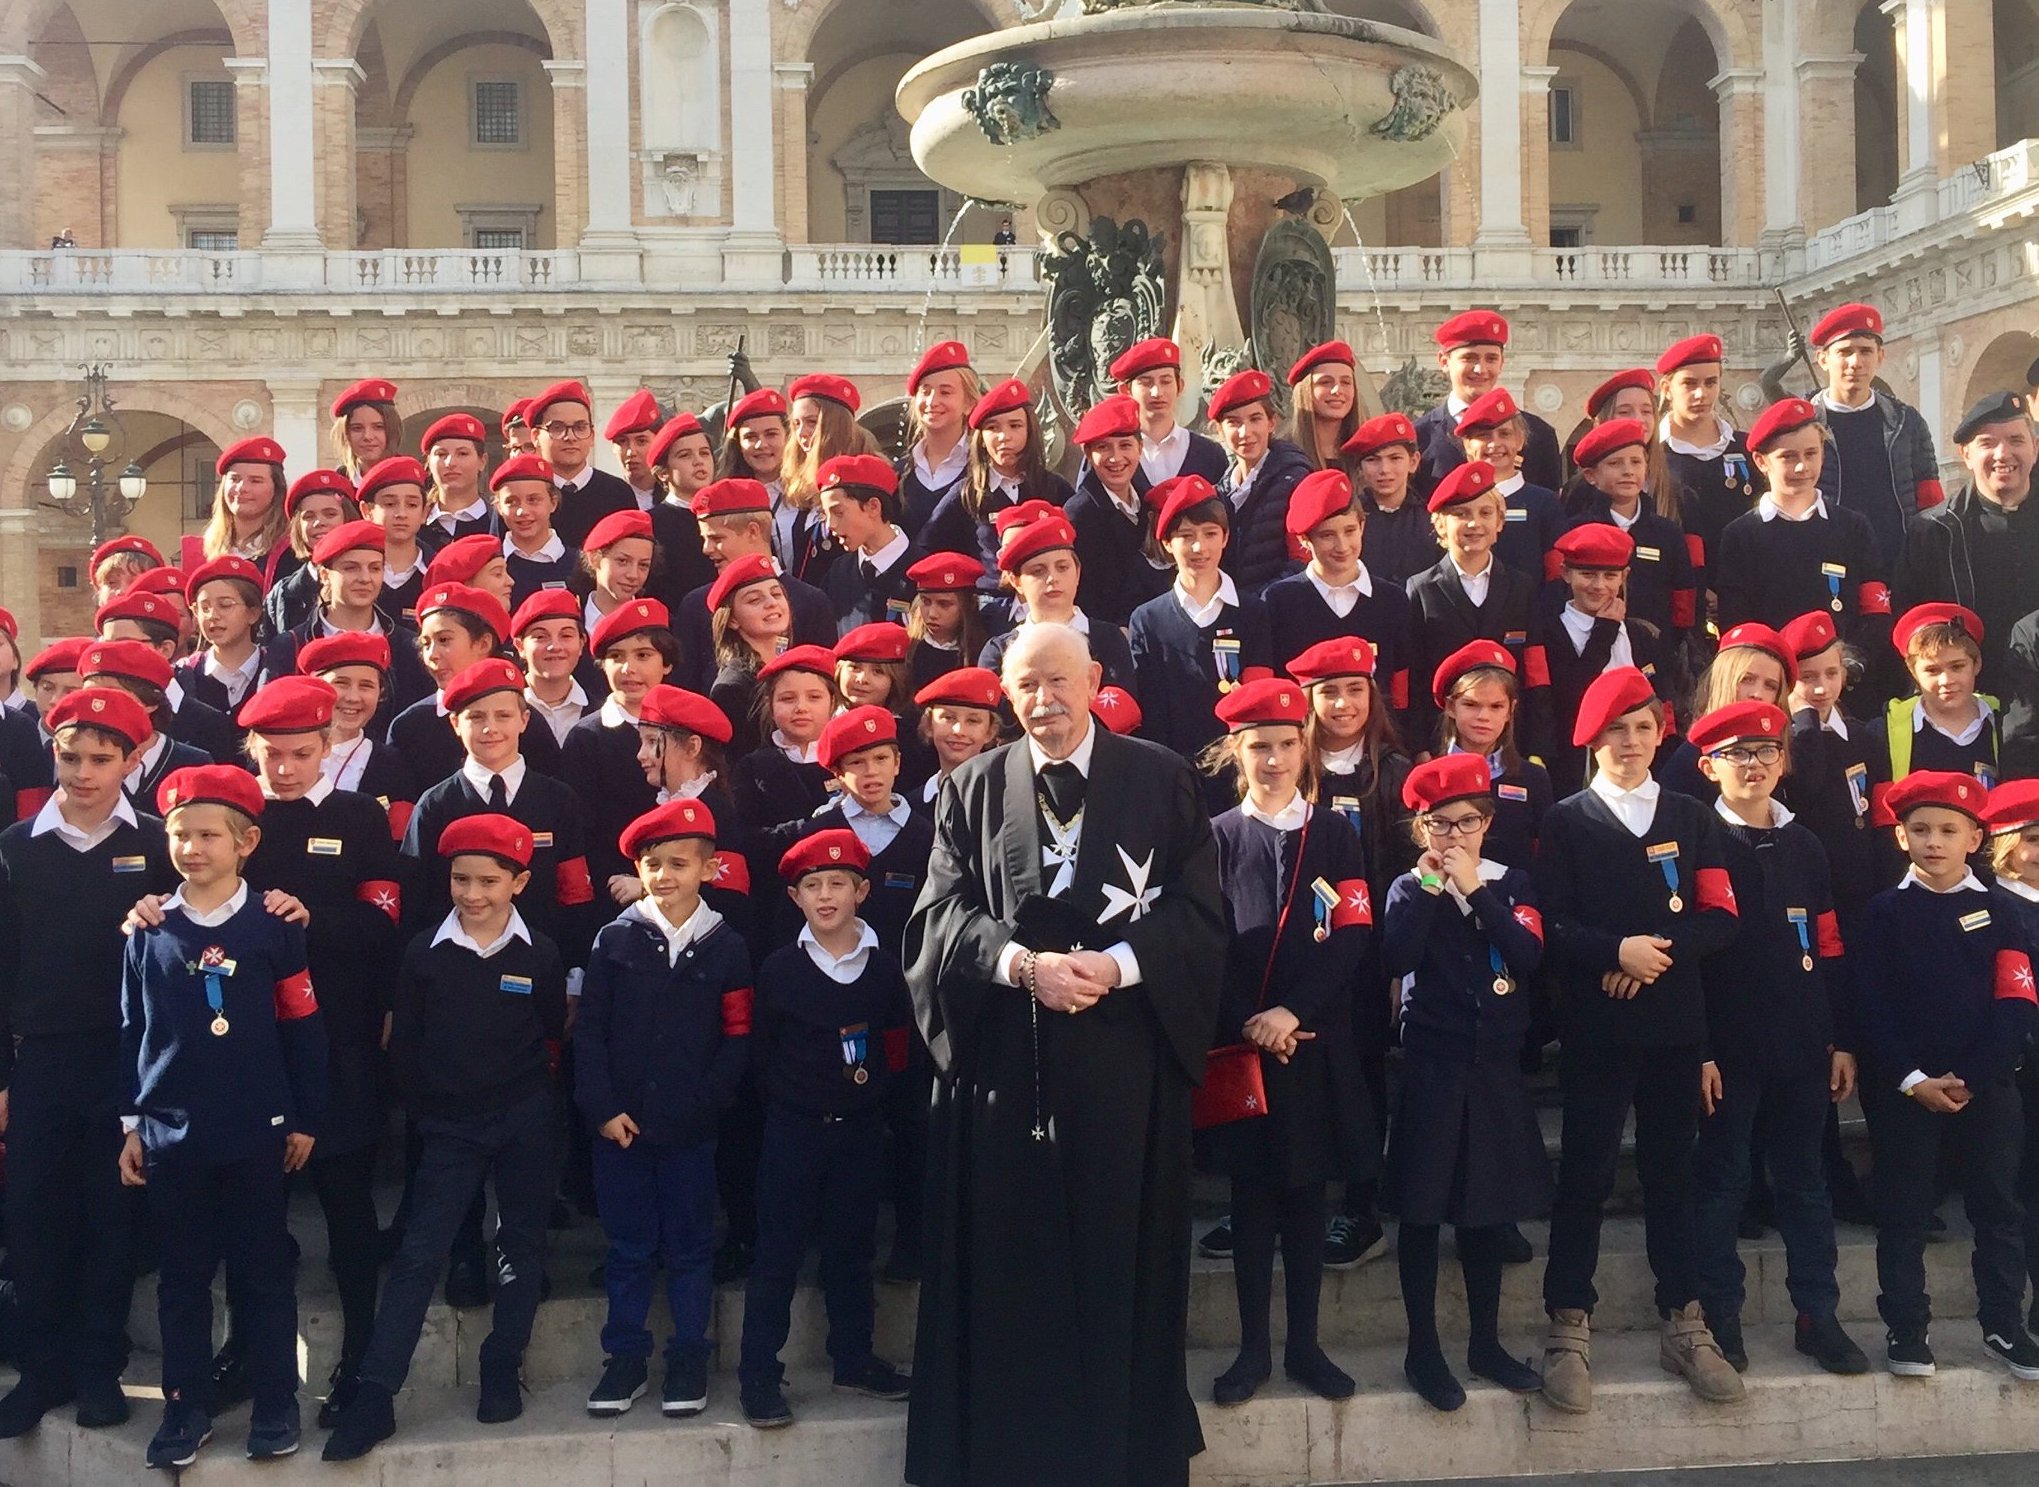 Pèlerinage de l’Ordre de Malte au Sanctuaire de Lorette (Loreto) : plus de 1700 participants venus de toute l’Italie